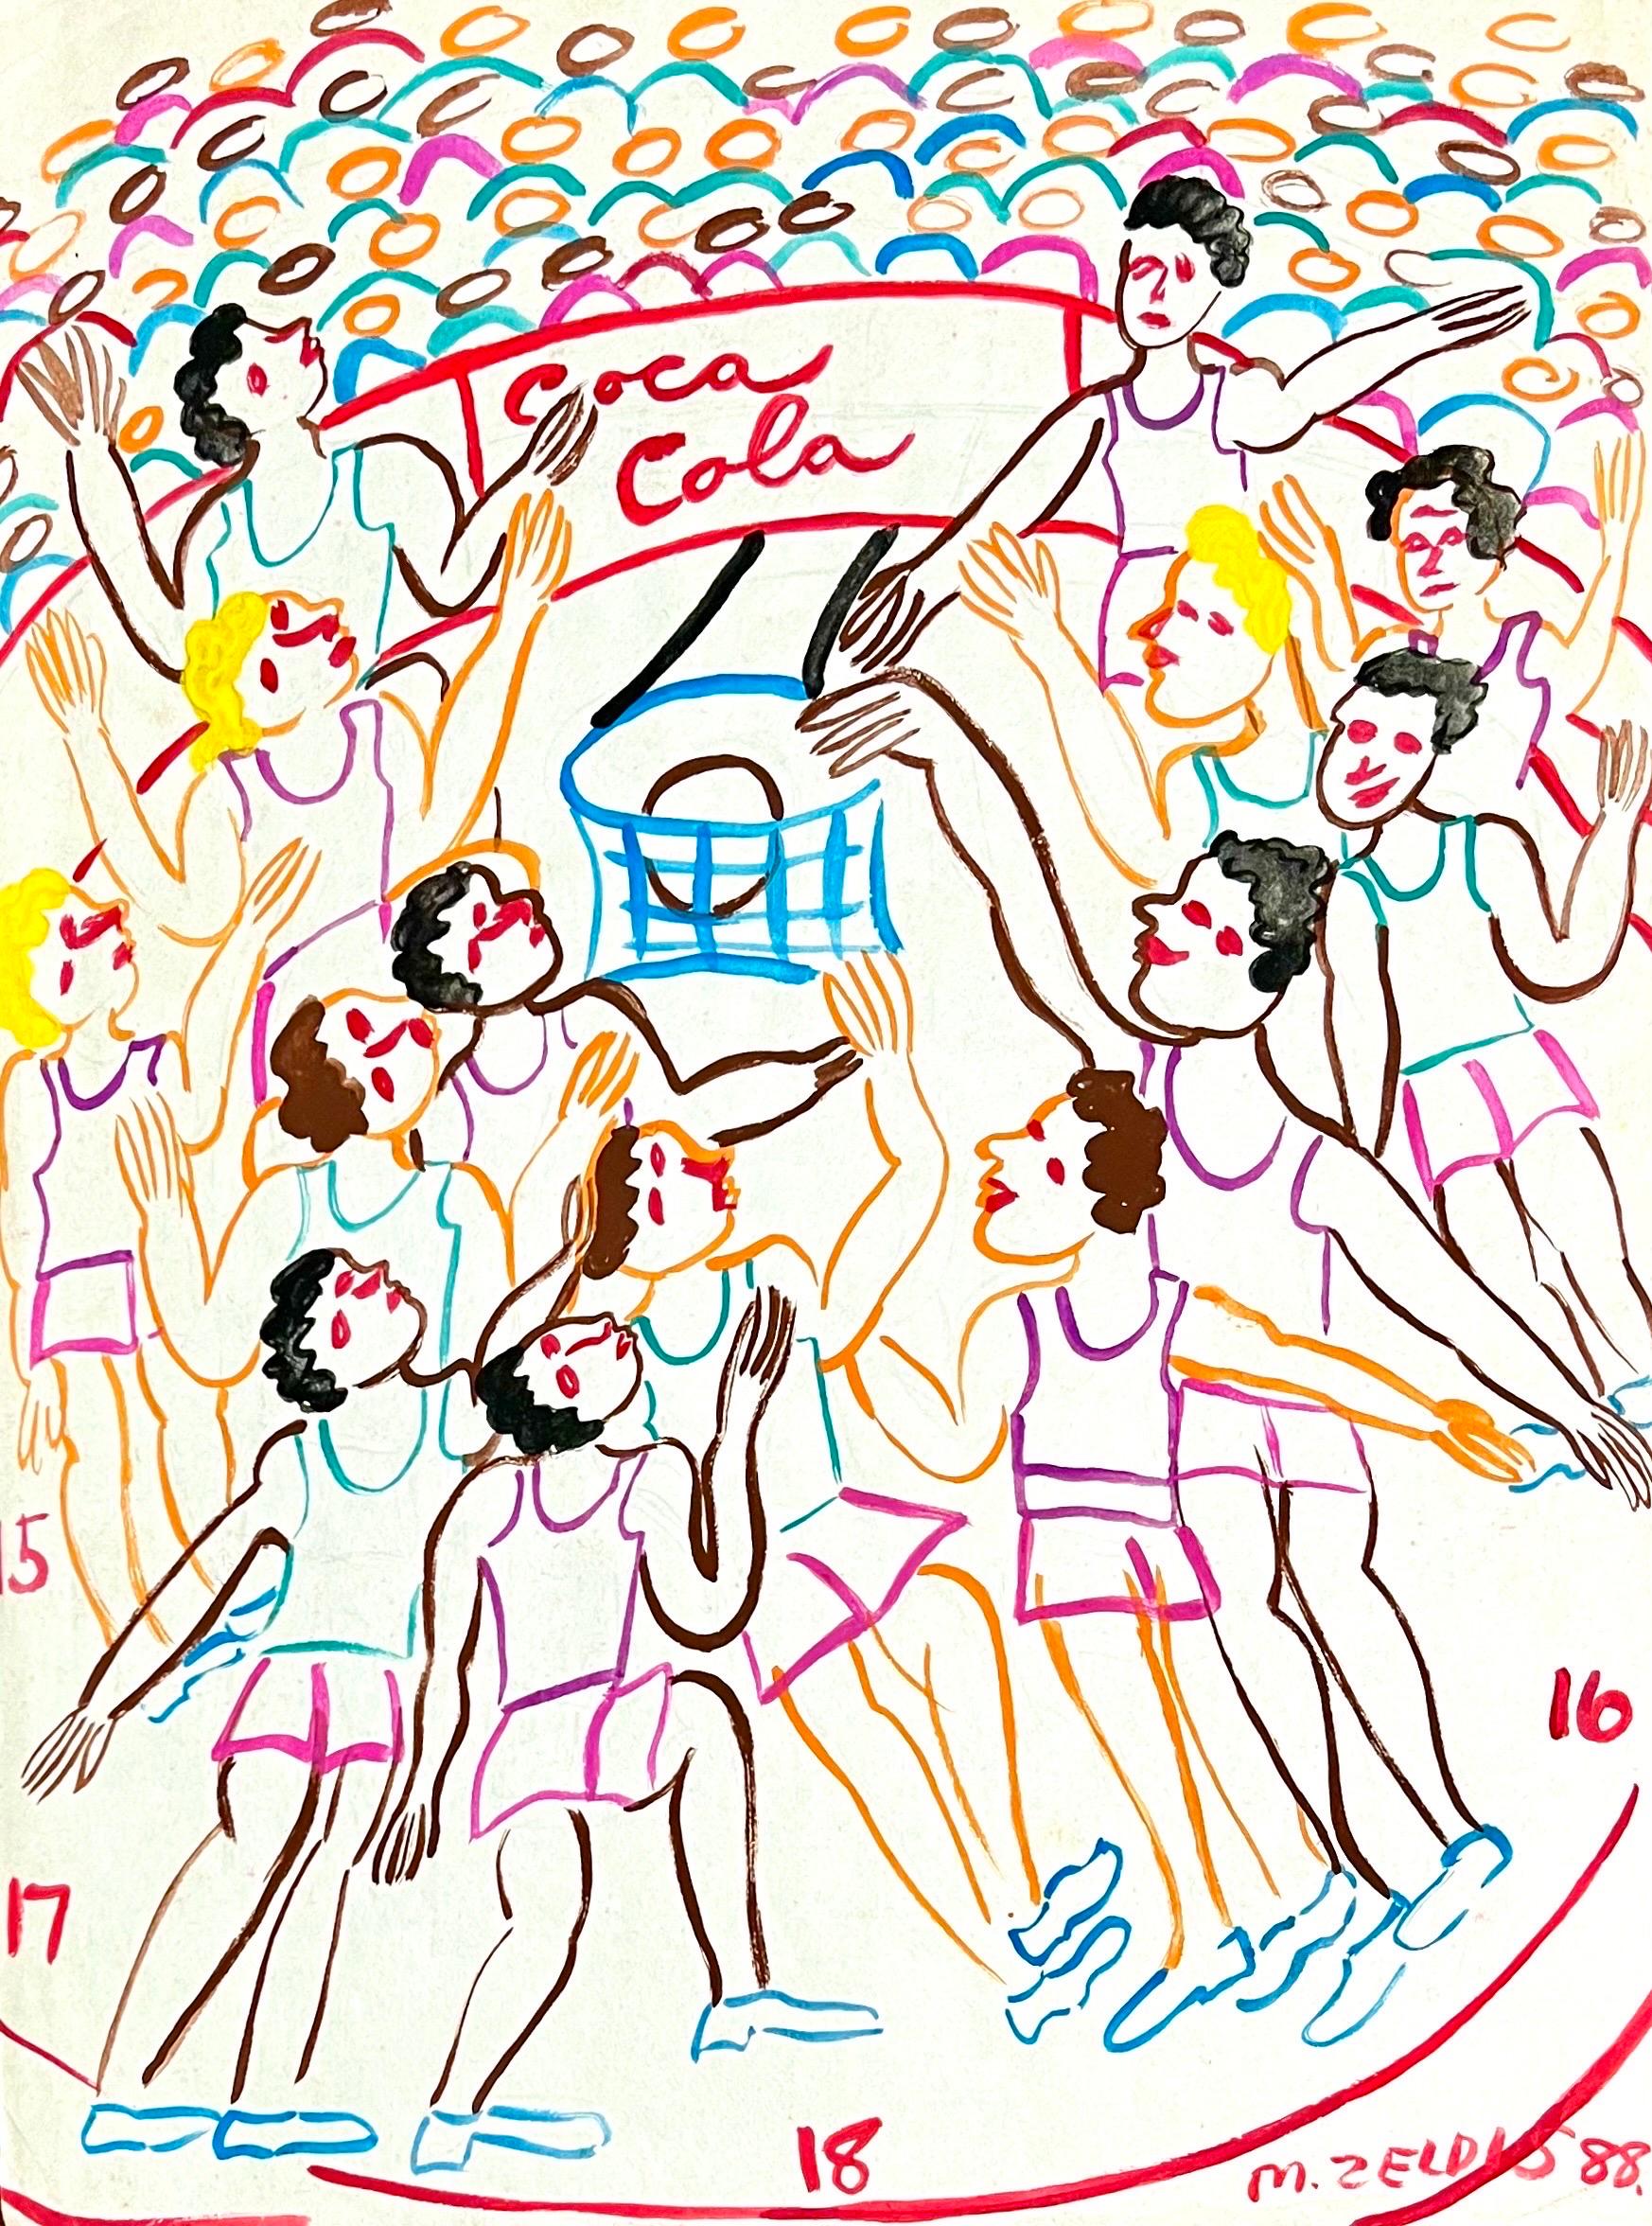 MALCAH ZELDIS
''Basketball'', 1988, Gouache auf Papier 
Rechts unten handsigniert und datiert, verso mit Bleistift betitelt



Malcah Zeldis (geboren als Mildred Brightman; 1931) ist eine amerikanische Volkskunstmalerin. Sie ist bekannt für ihre